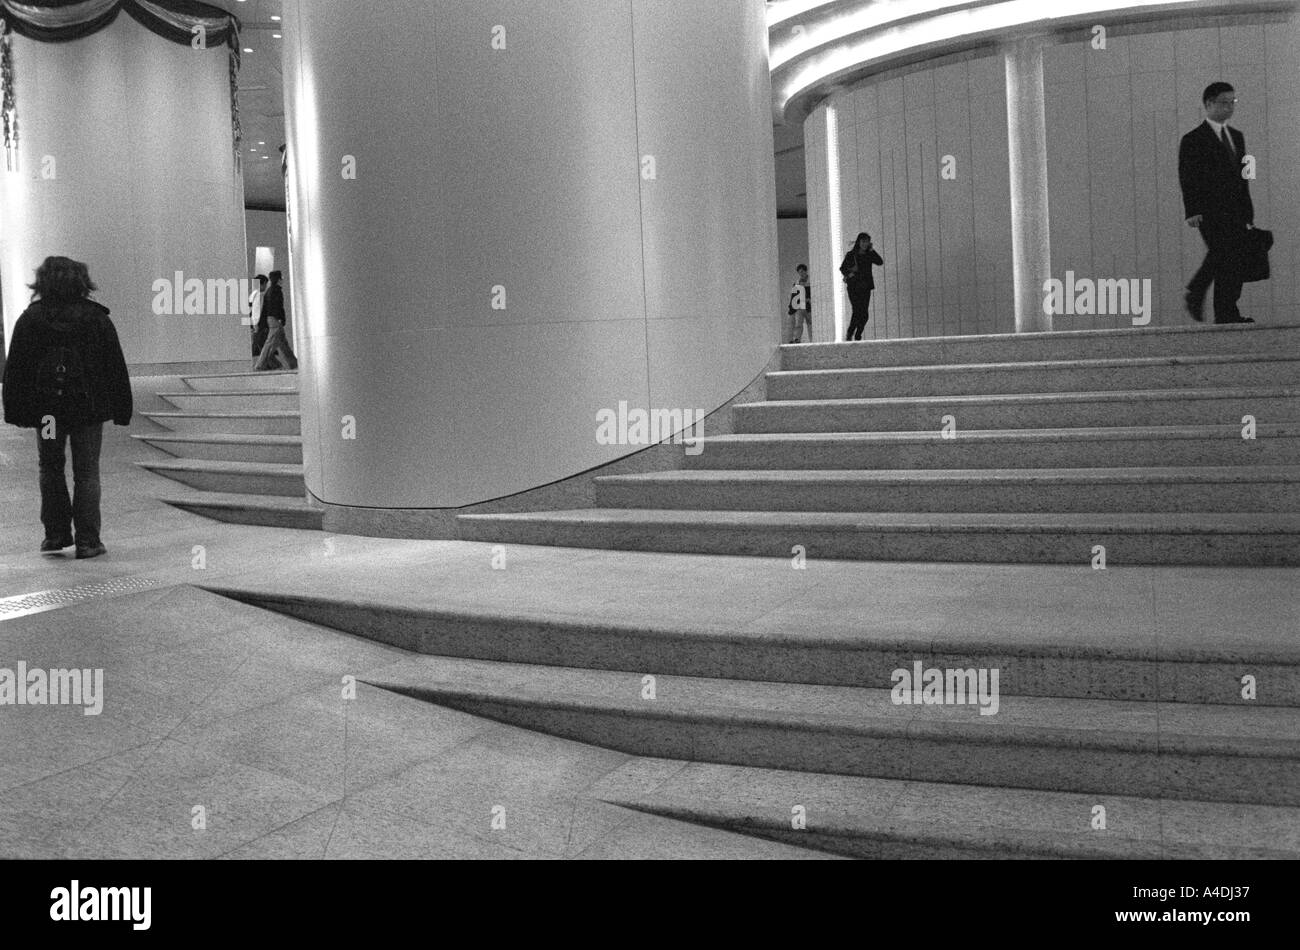 Balades d'affaires dans un bâtiment, de Hong Kong, République populaire de Chine, Hong Kong Banque D'Images